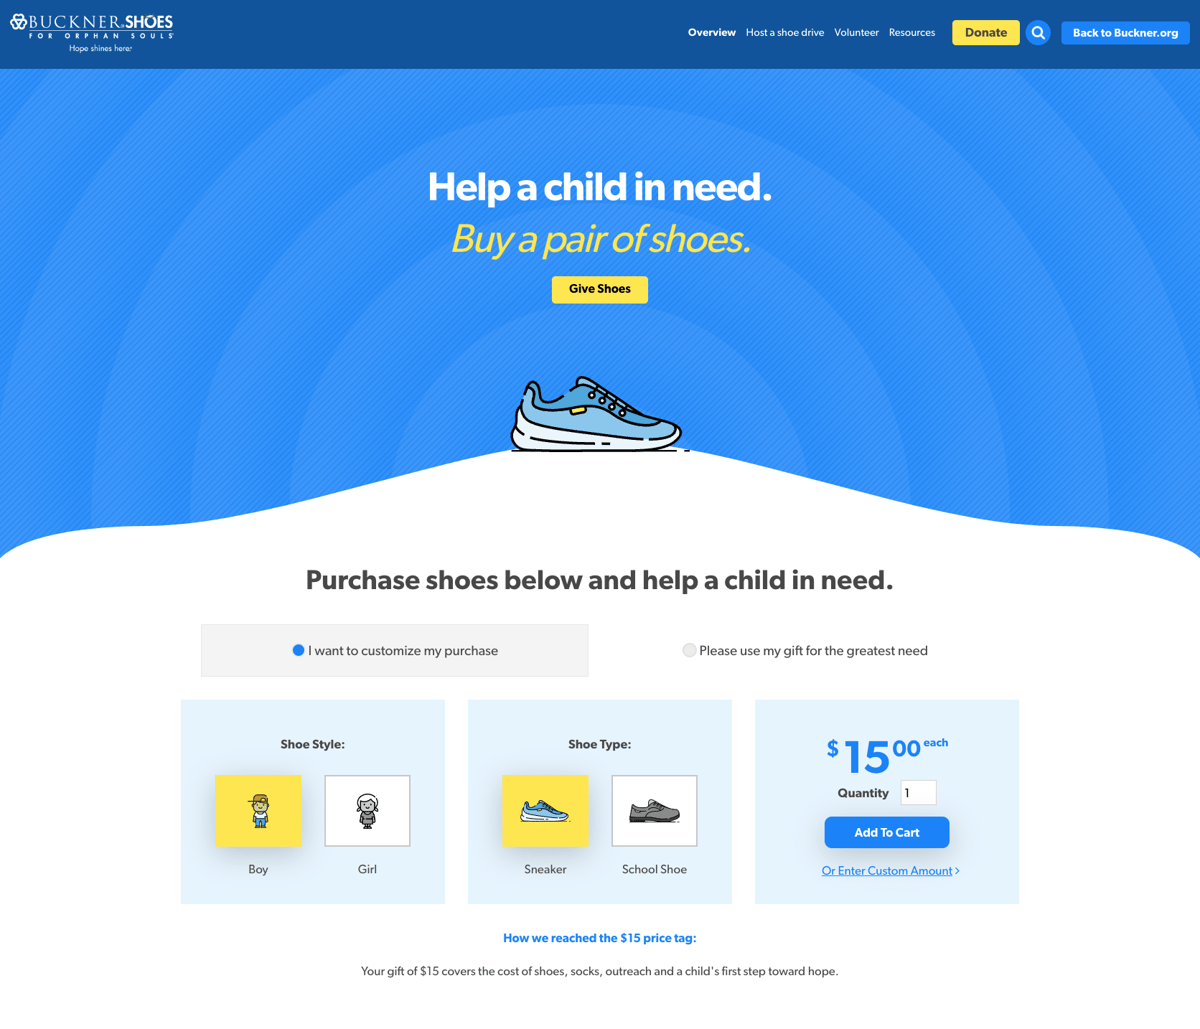 Buckner Used iDonate's SDK to create their fundraising page